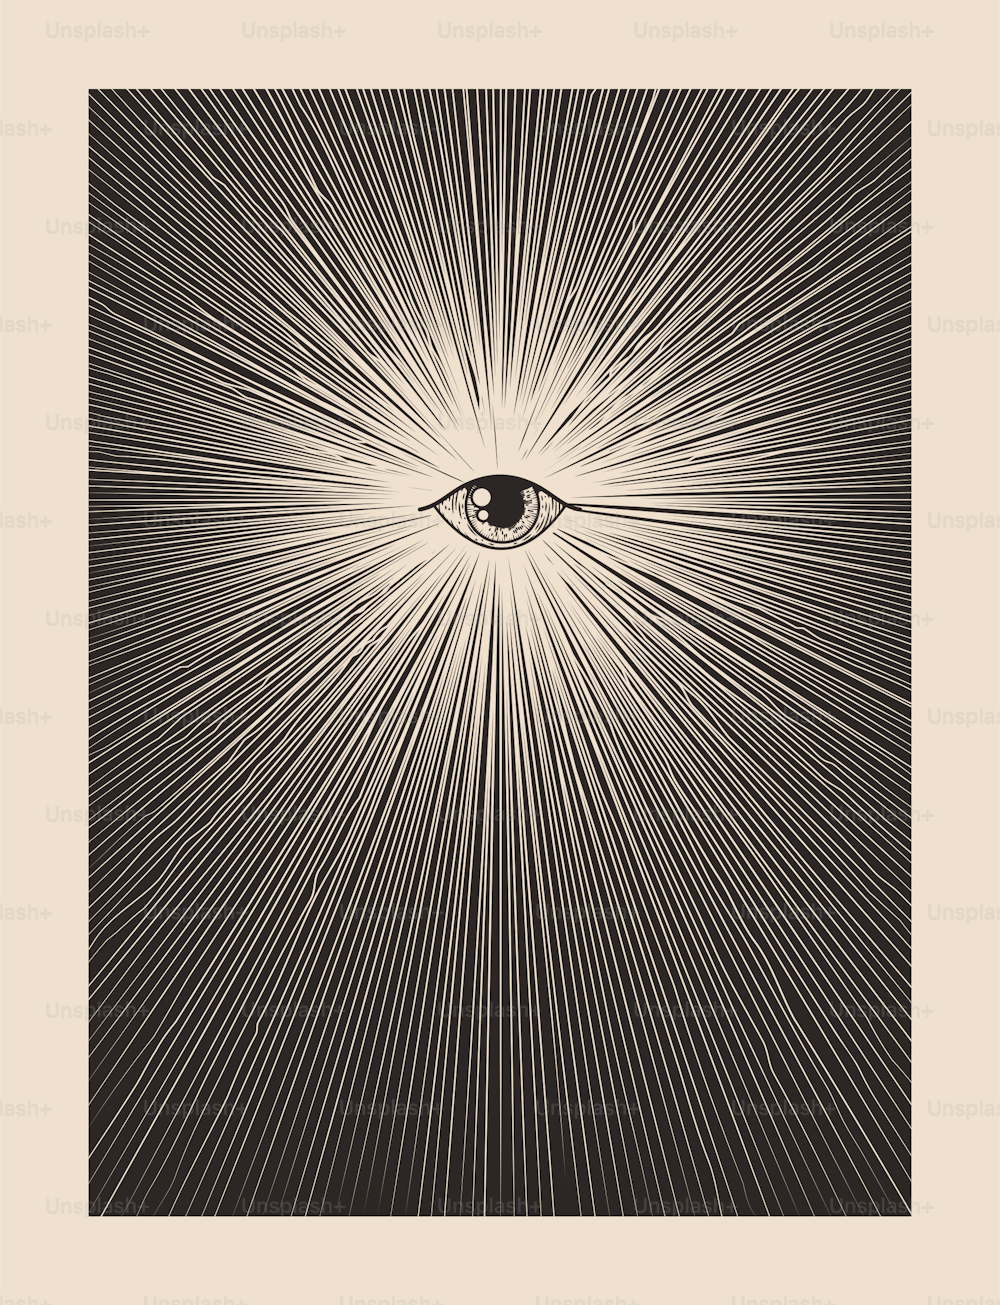 Todos los ojos de dios que ven la plantilla de diseño de póster de impresión de albañil místico vintage con el ojo rodeado de rayos de sol. Vector eps 10 ilustración